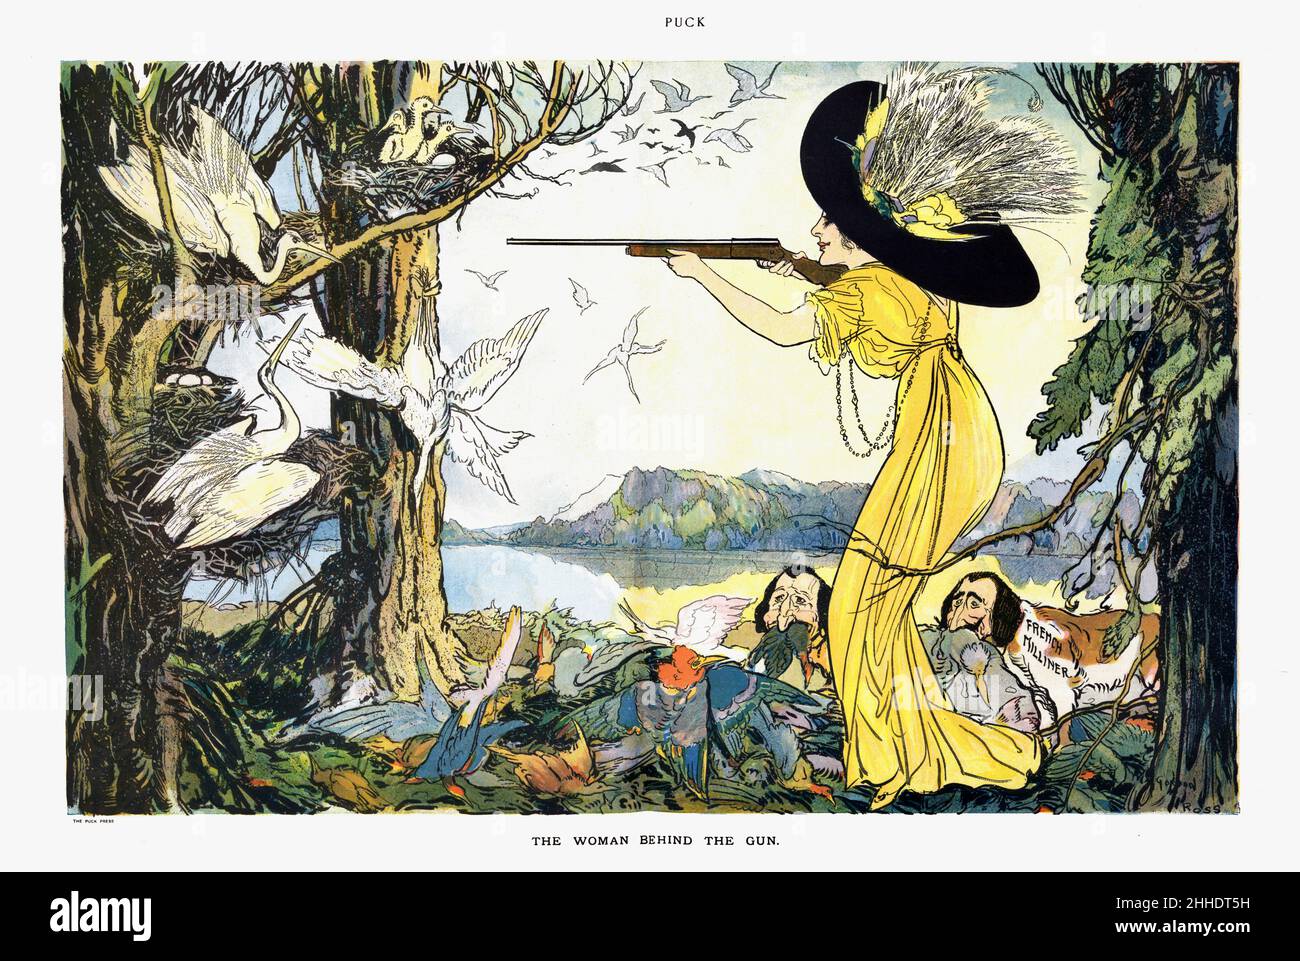 Gordon Ross - die Frau hinter dem Gewehr - zeigt eine Frau, möglicherweise Coco Chanel, die einen großen Hut mit Federn trägt und auf große weiße Vögel schießt - 1911 Stockfoto